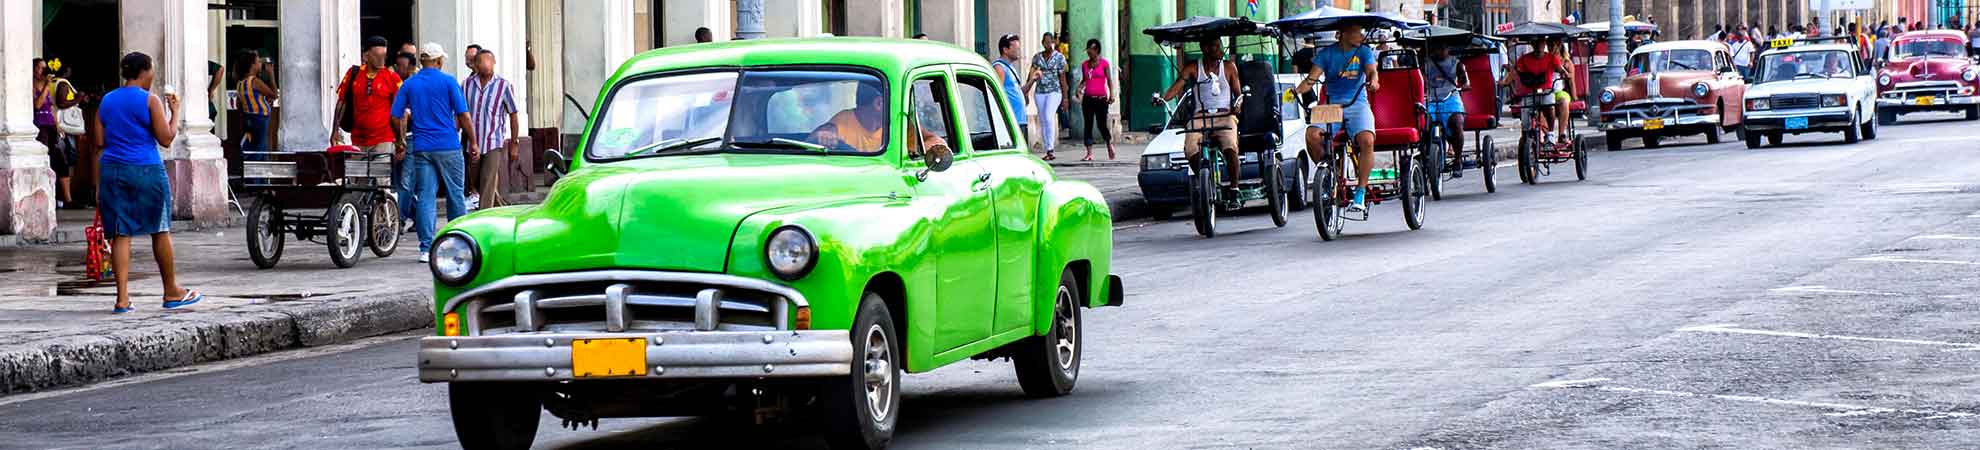 Argent à Cuba